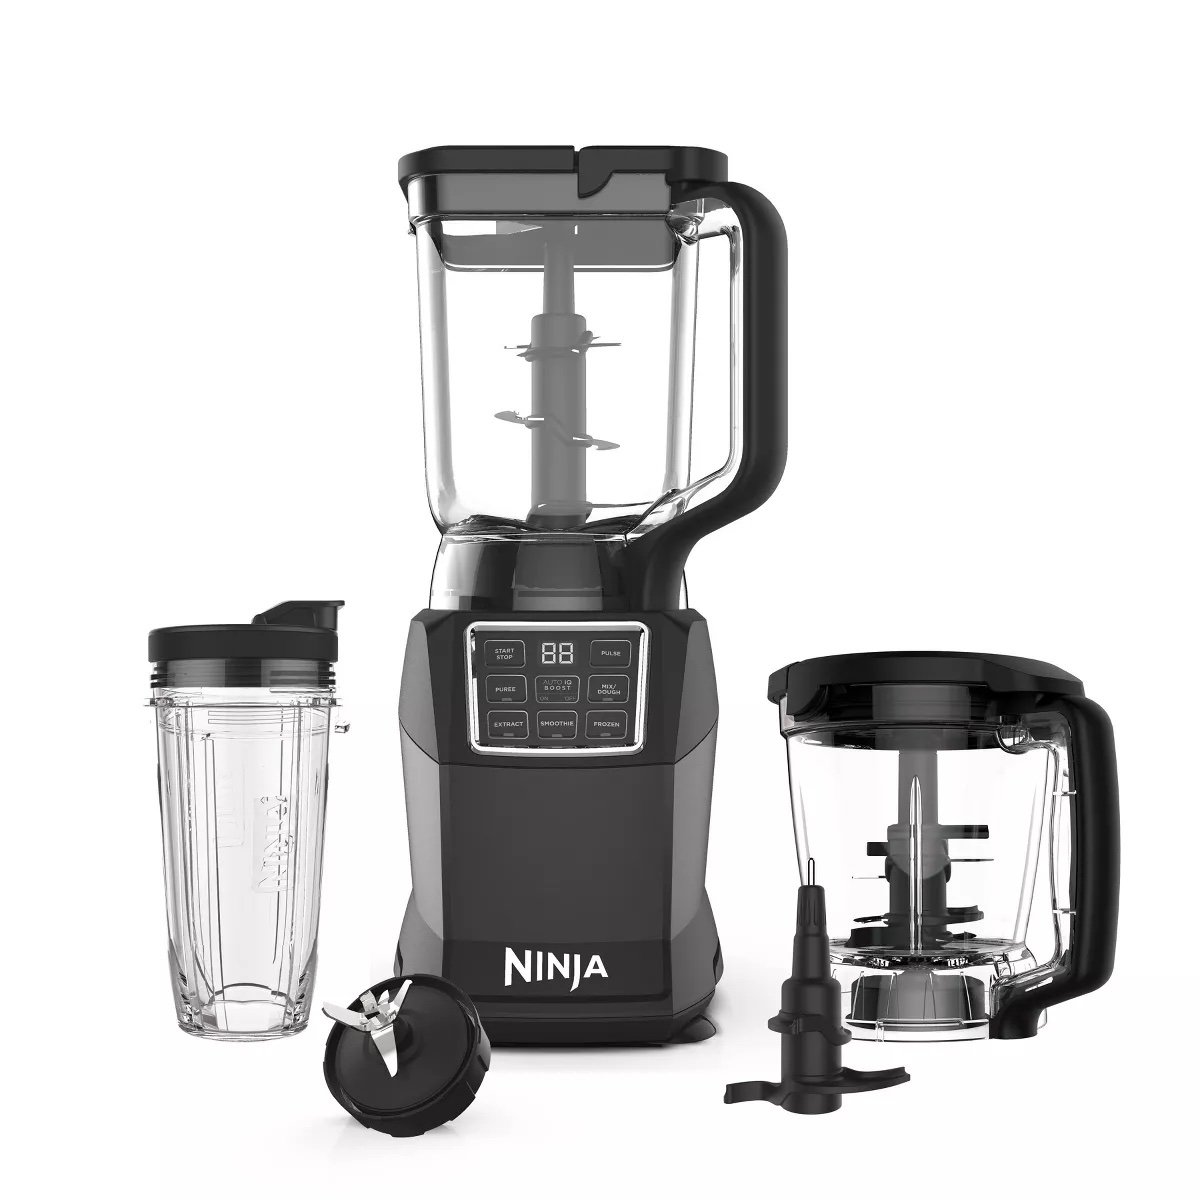 Ninja Blender system for under $100